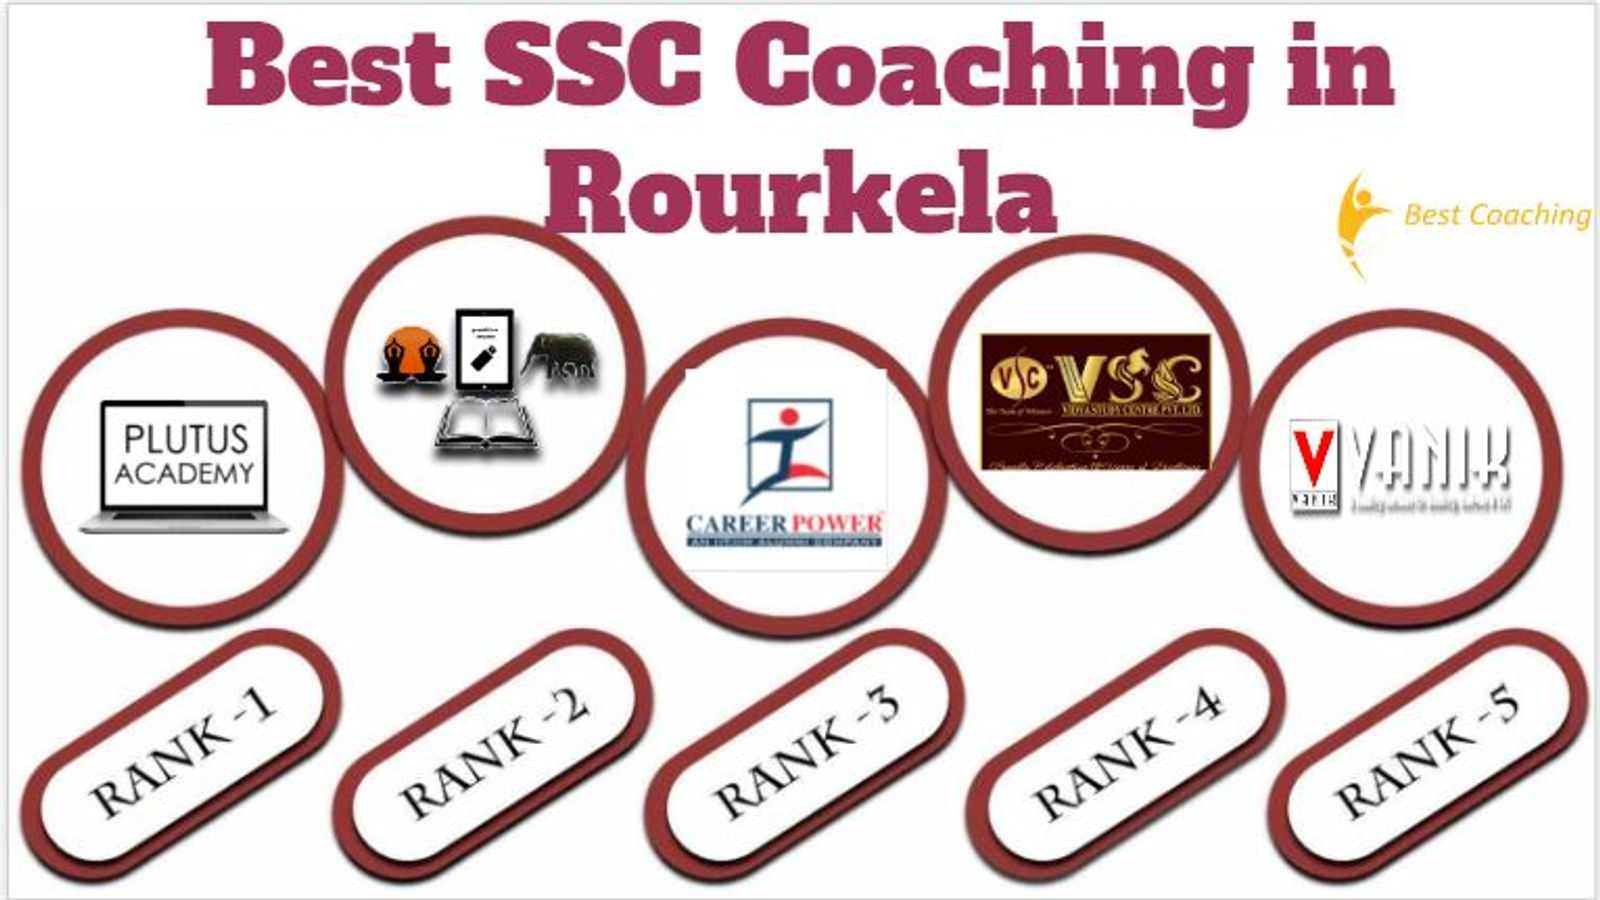 Best SSC Coaching in Rourkela